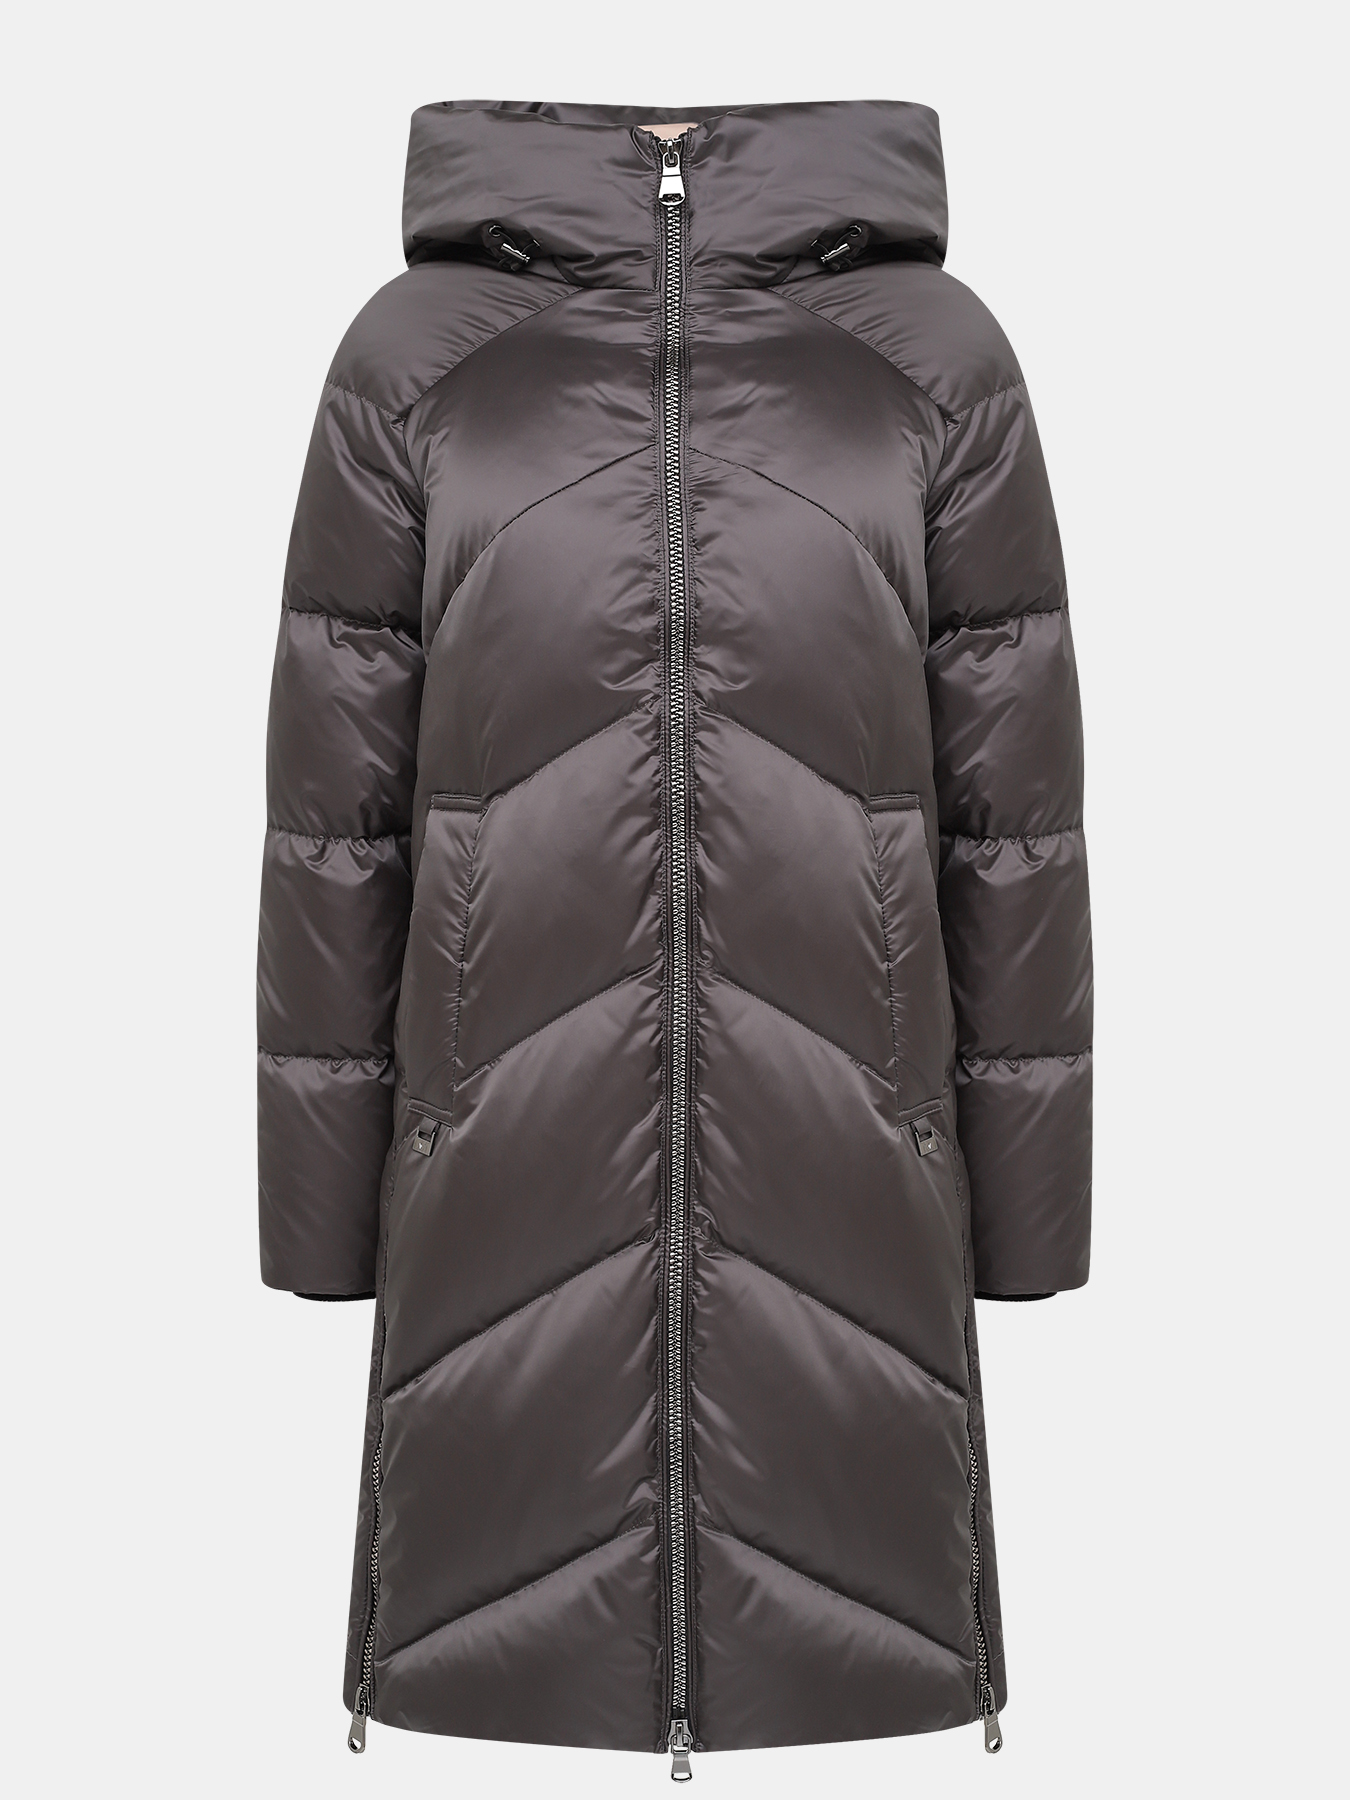 Пальто зимнее AVI 433557-018, цвет серый, размер 36